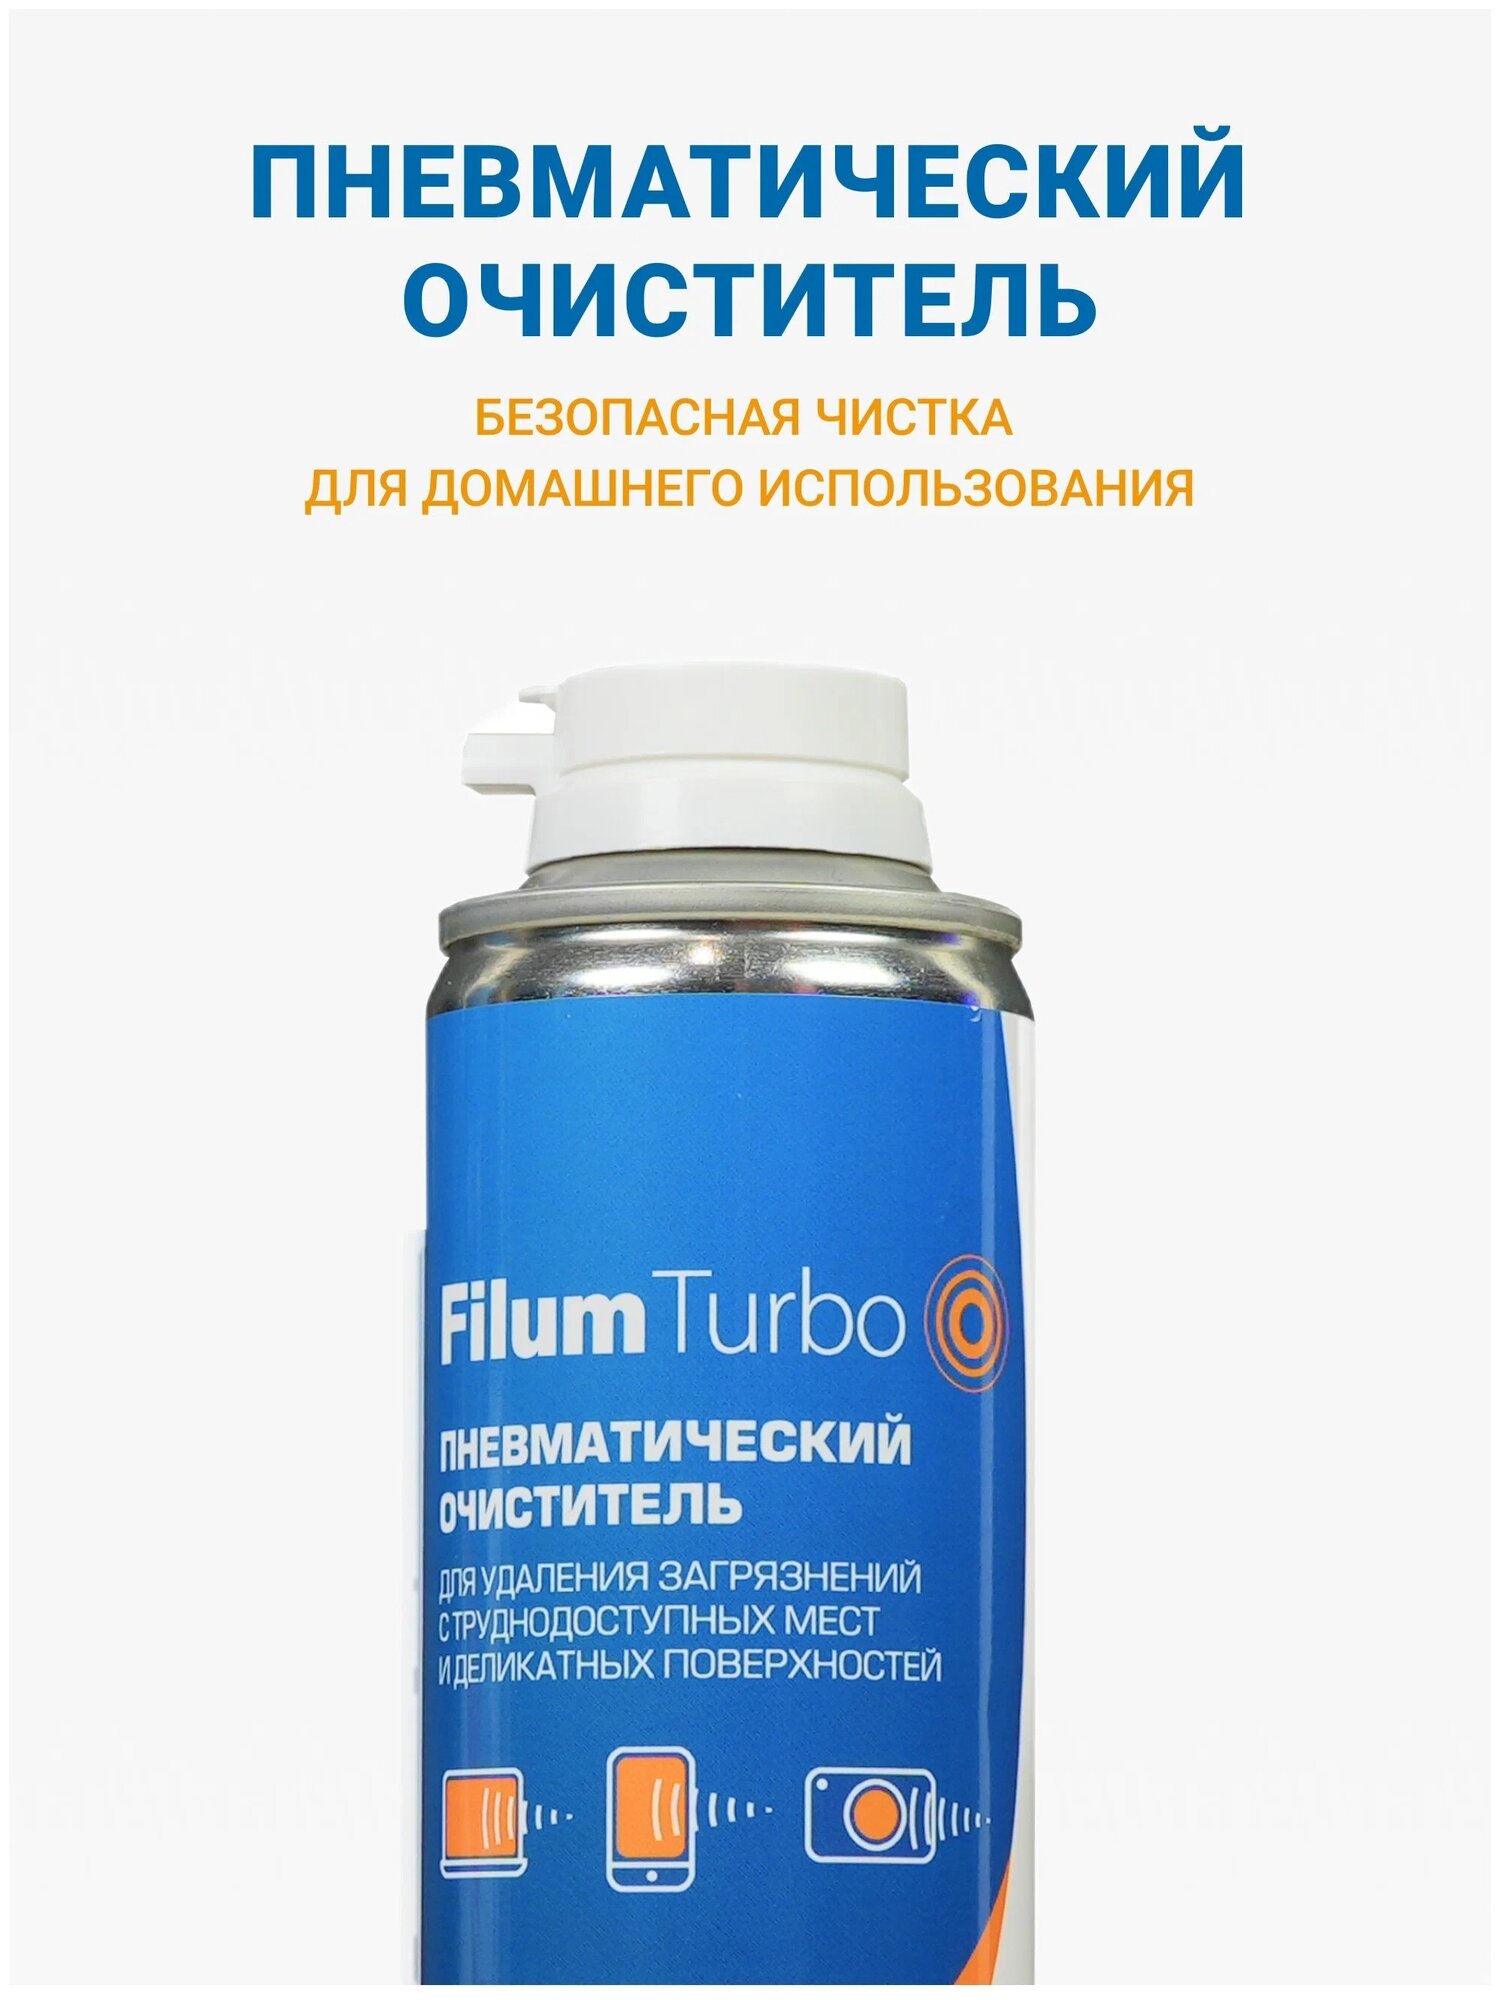 Пневматический очиститель Filum Turbo FL-CLN-Air400 для удаления загрязнений с труднодоступных мест и деликатных поверхностей, 400 мл.